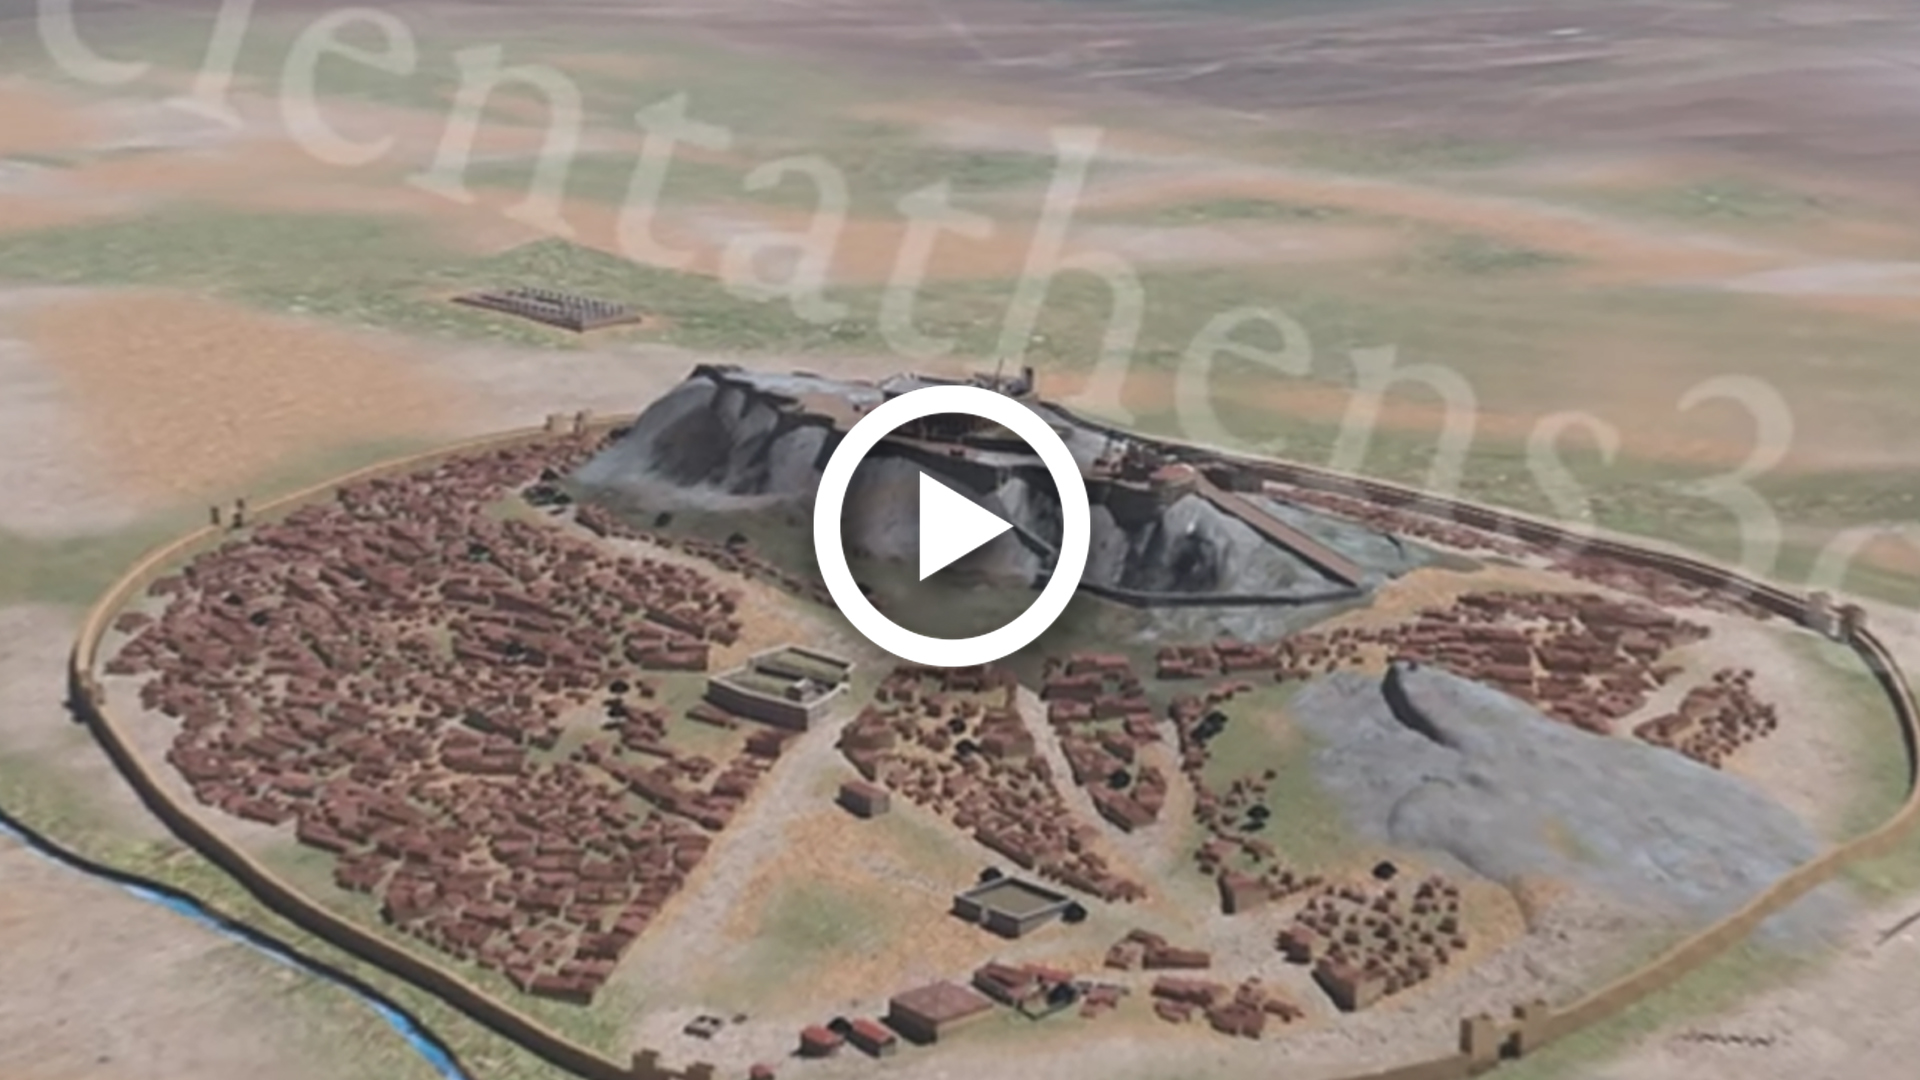 3d virtual tour of the parthenon